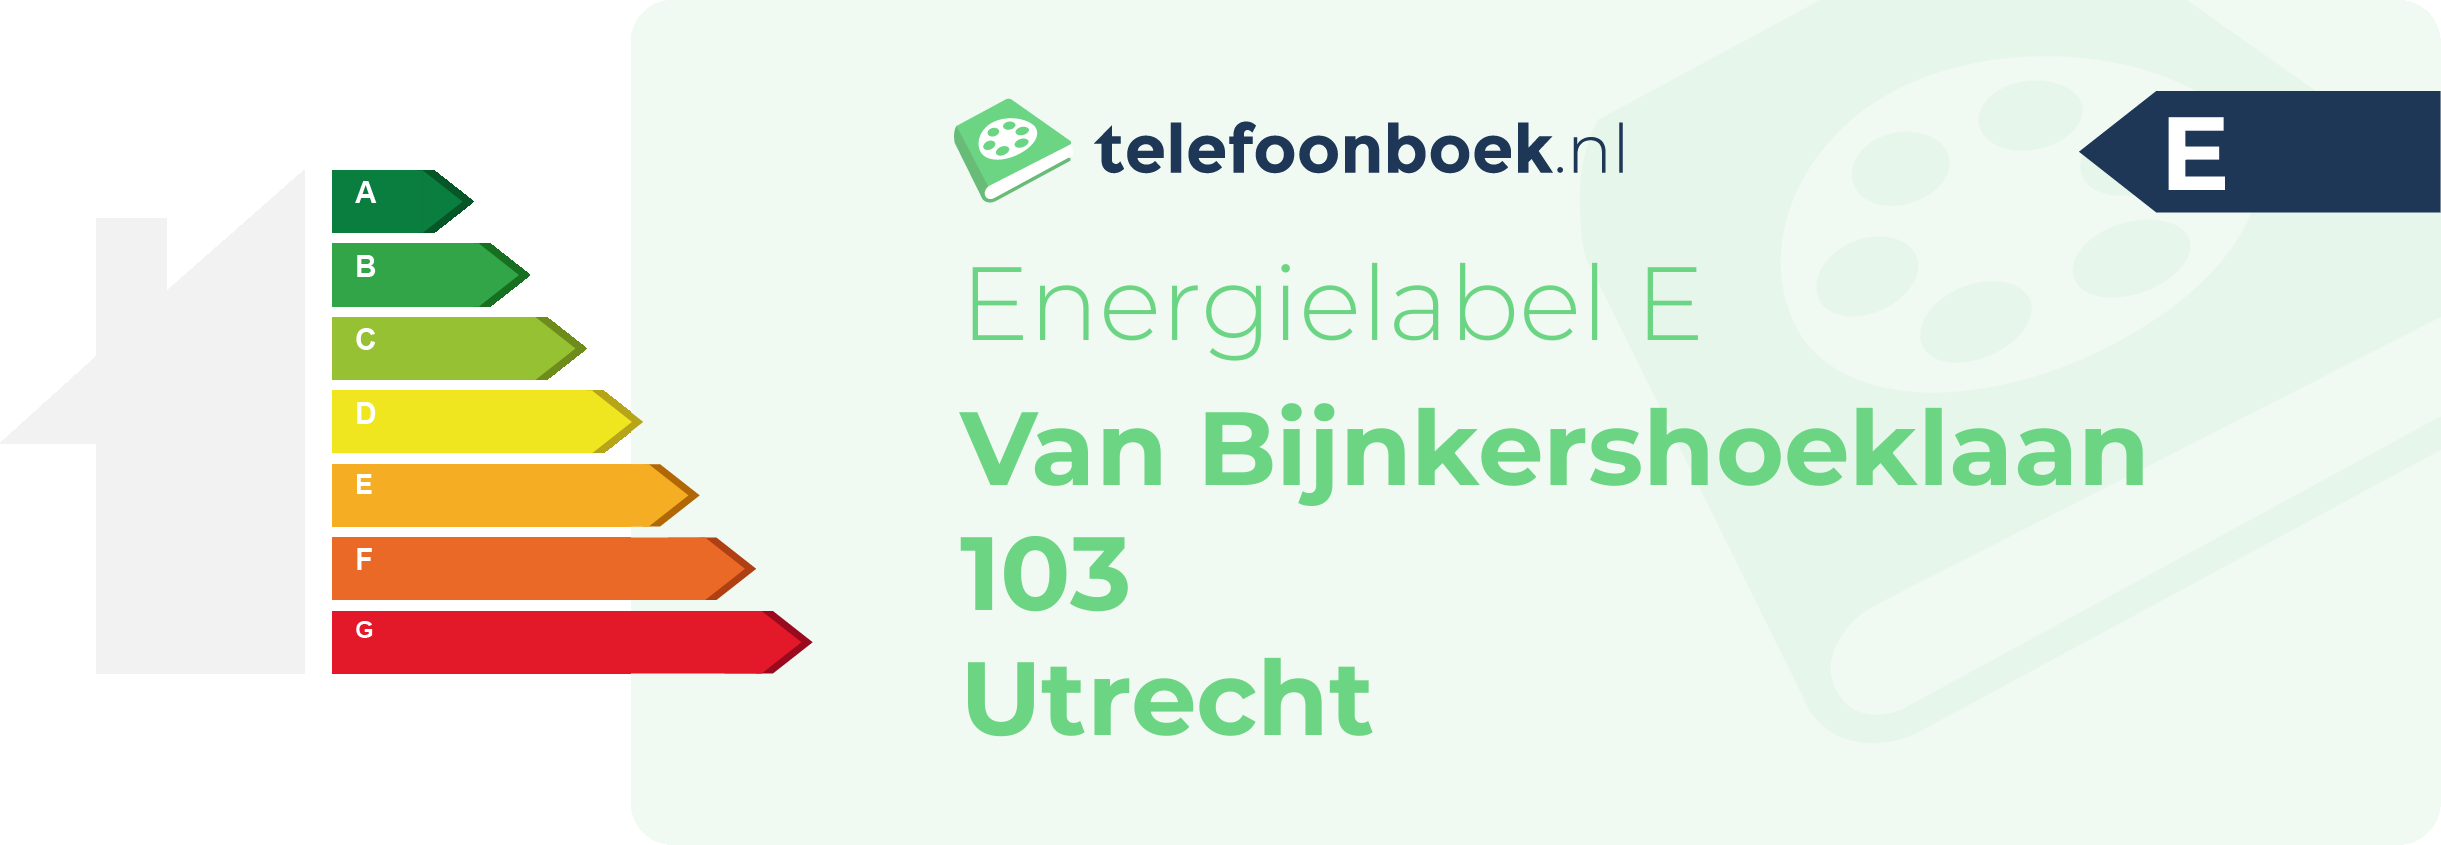 Energielabel Van Bijnkershoeklaan 103 Utrecht